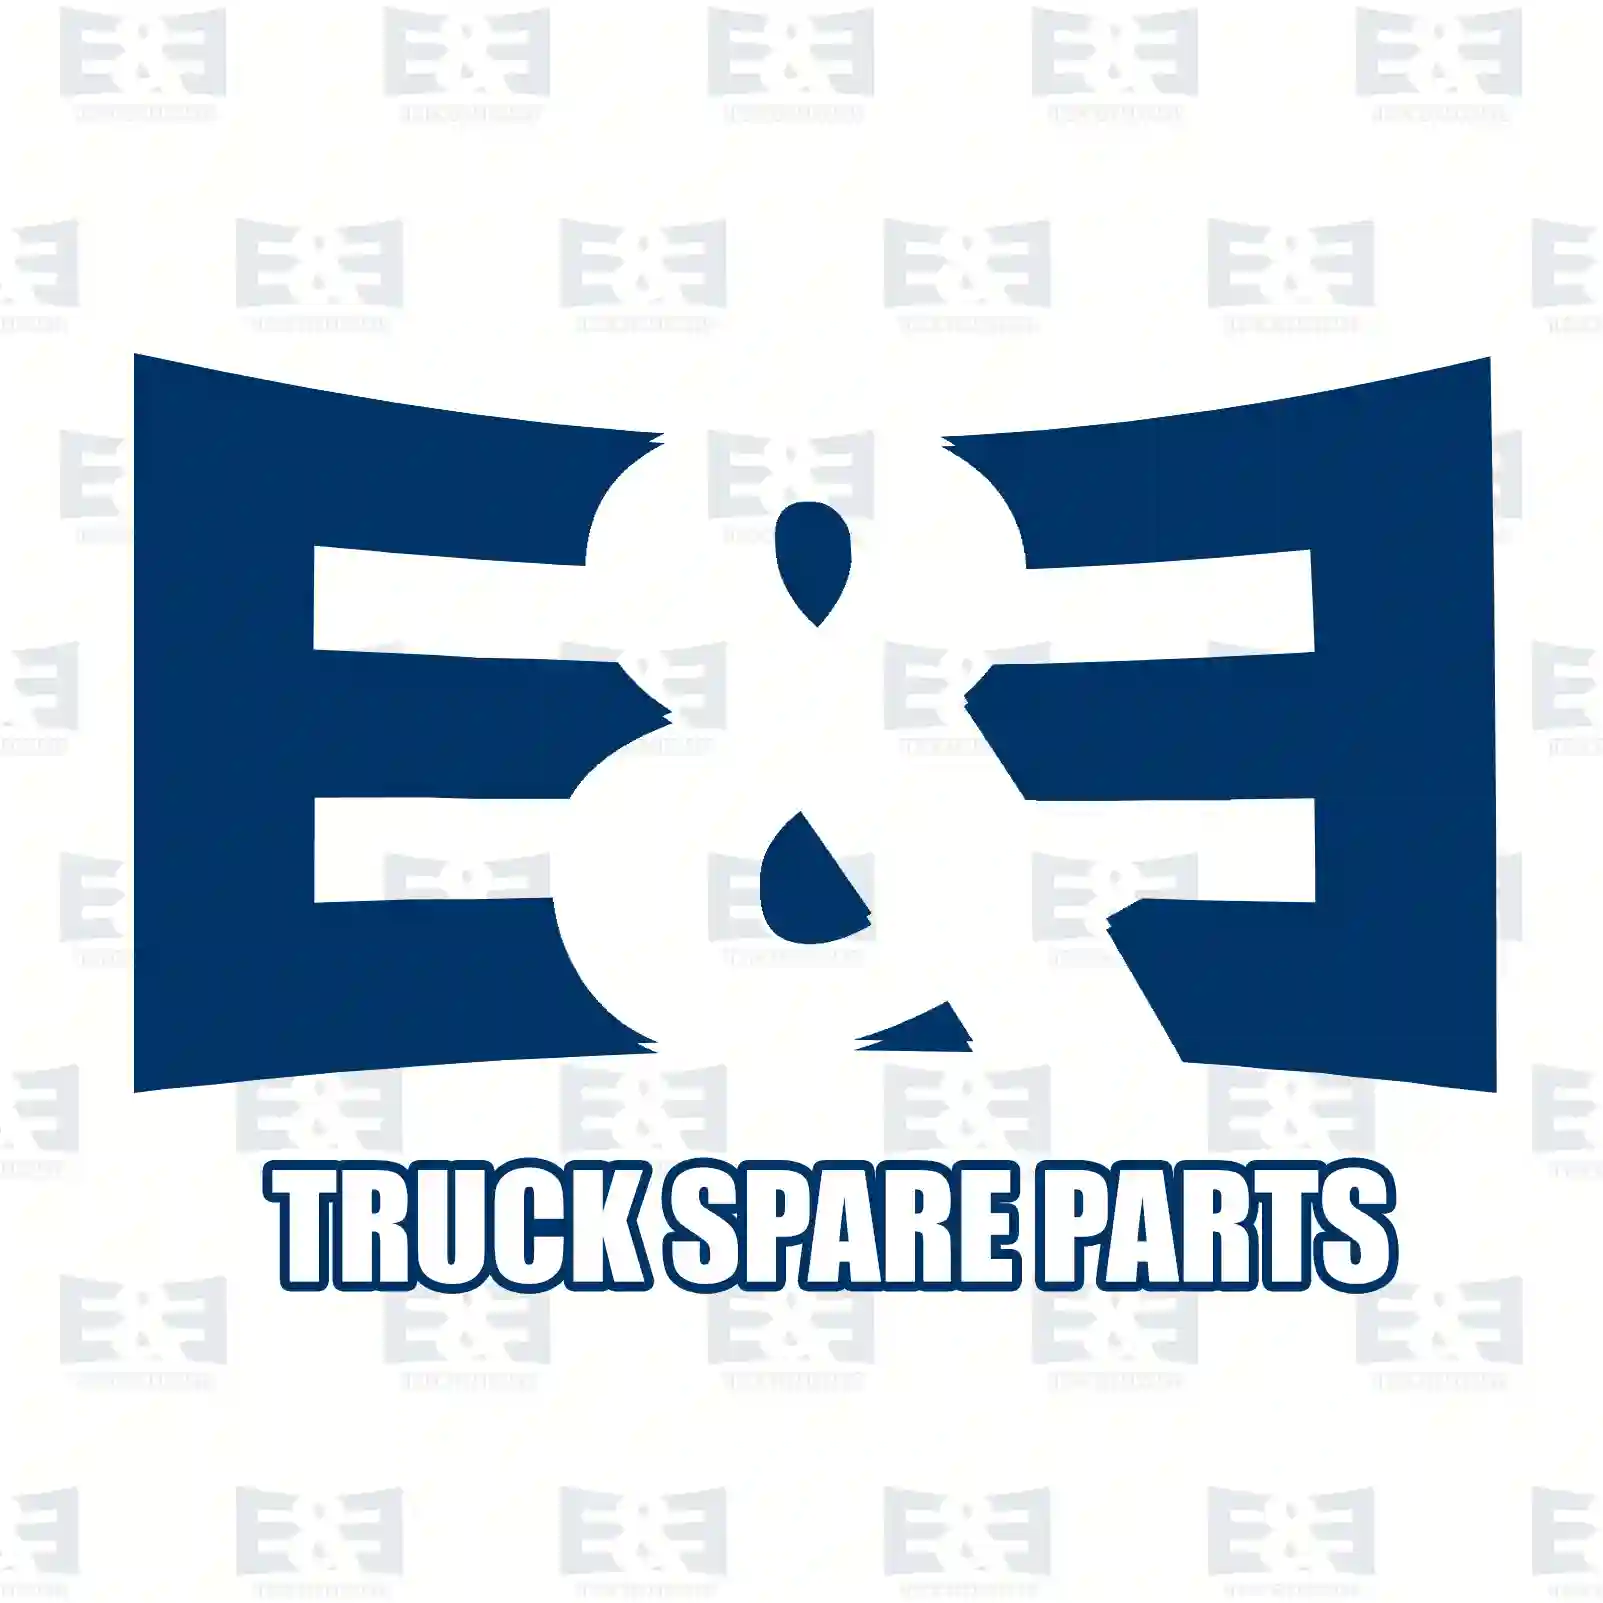 Gear shift knob, 2E2278569, 81970106001, 0002 ||  2E2278569 E&E Truck Spare Parts | Truck Spare Parts, Auotomotive Spare Parts Gear shift knob, 2E2278569, 81970106001, 0002 ||  2E2278569 E&E Truck Spare Parts | Truck Spare Parts, Auotomotive Spare Parts